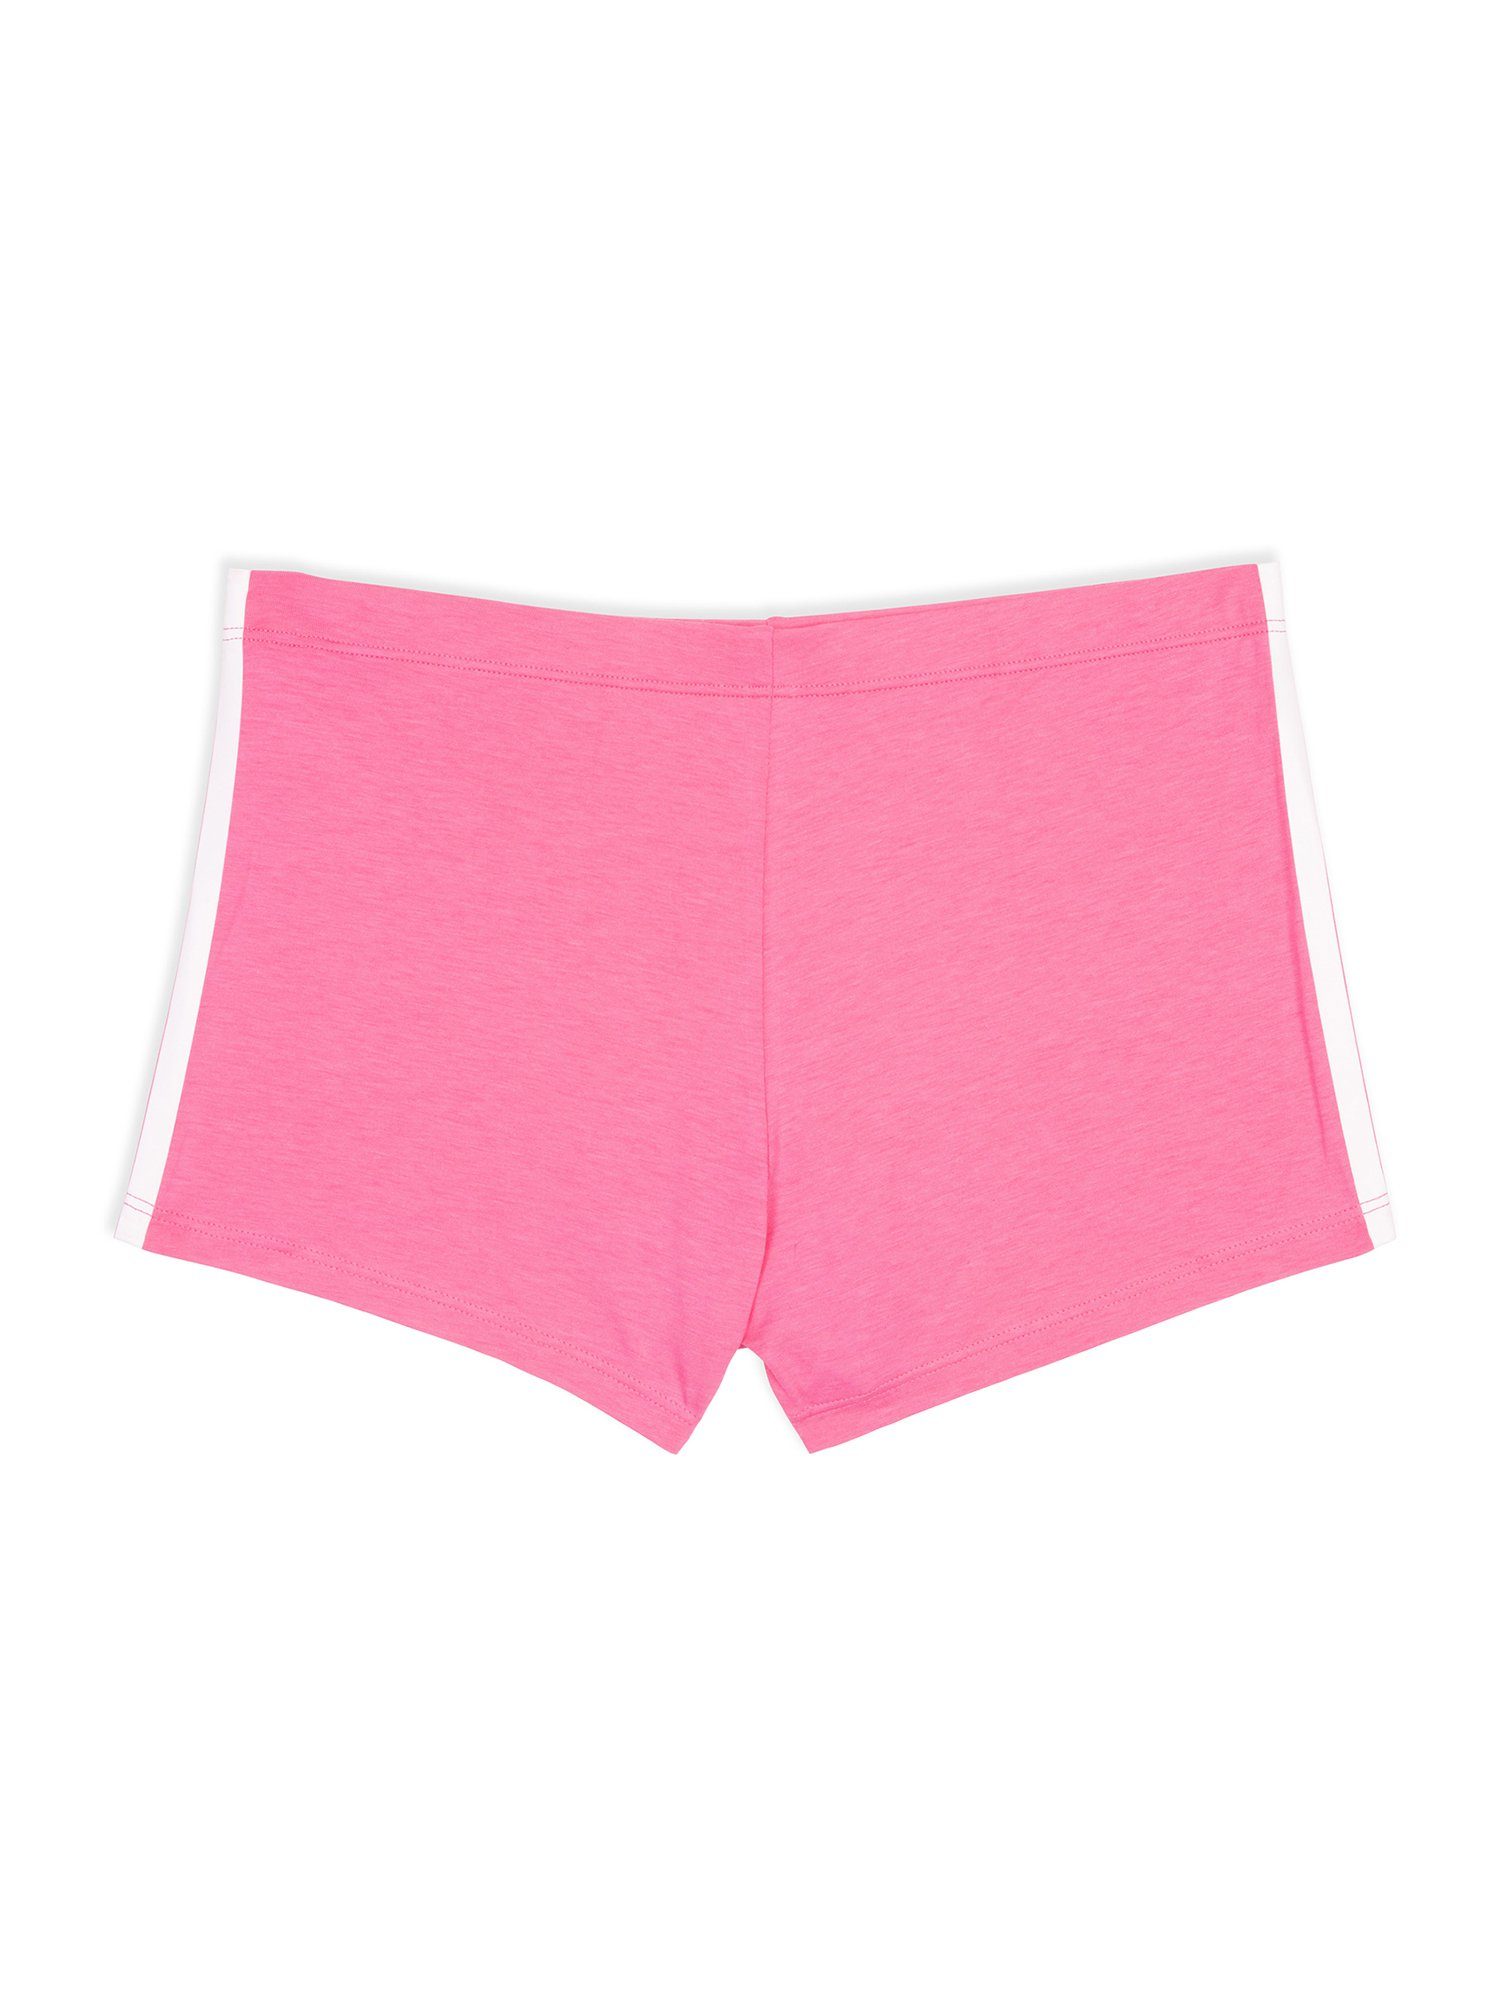 adidas Originals Boxer Biker pink lucid boxershort unterhose Short unterwäsche